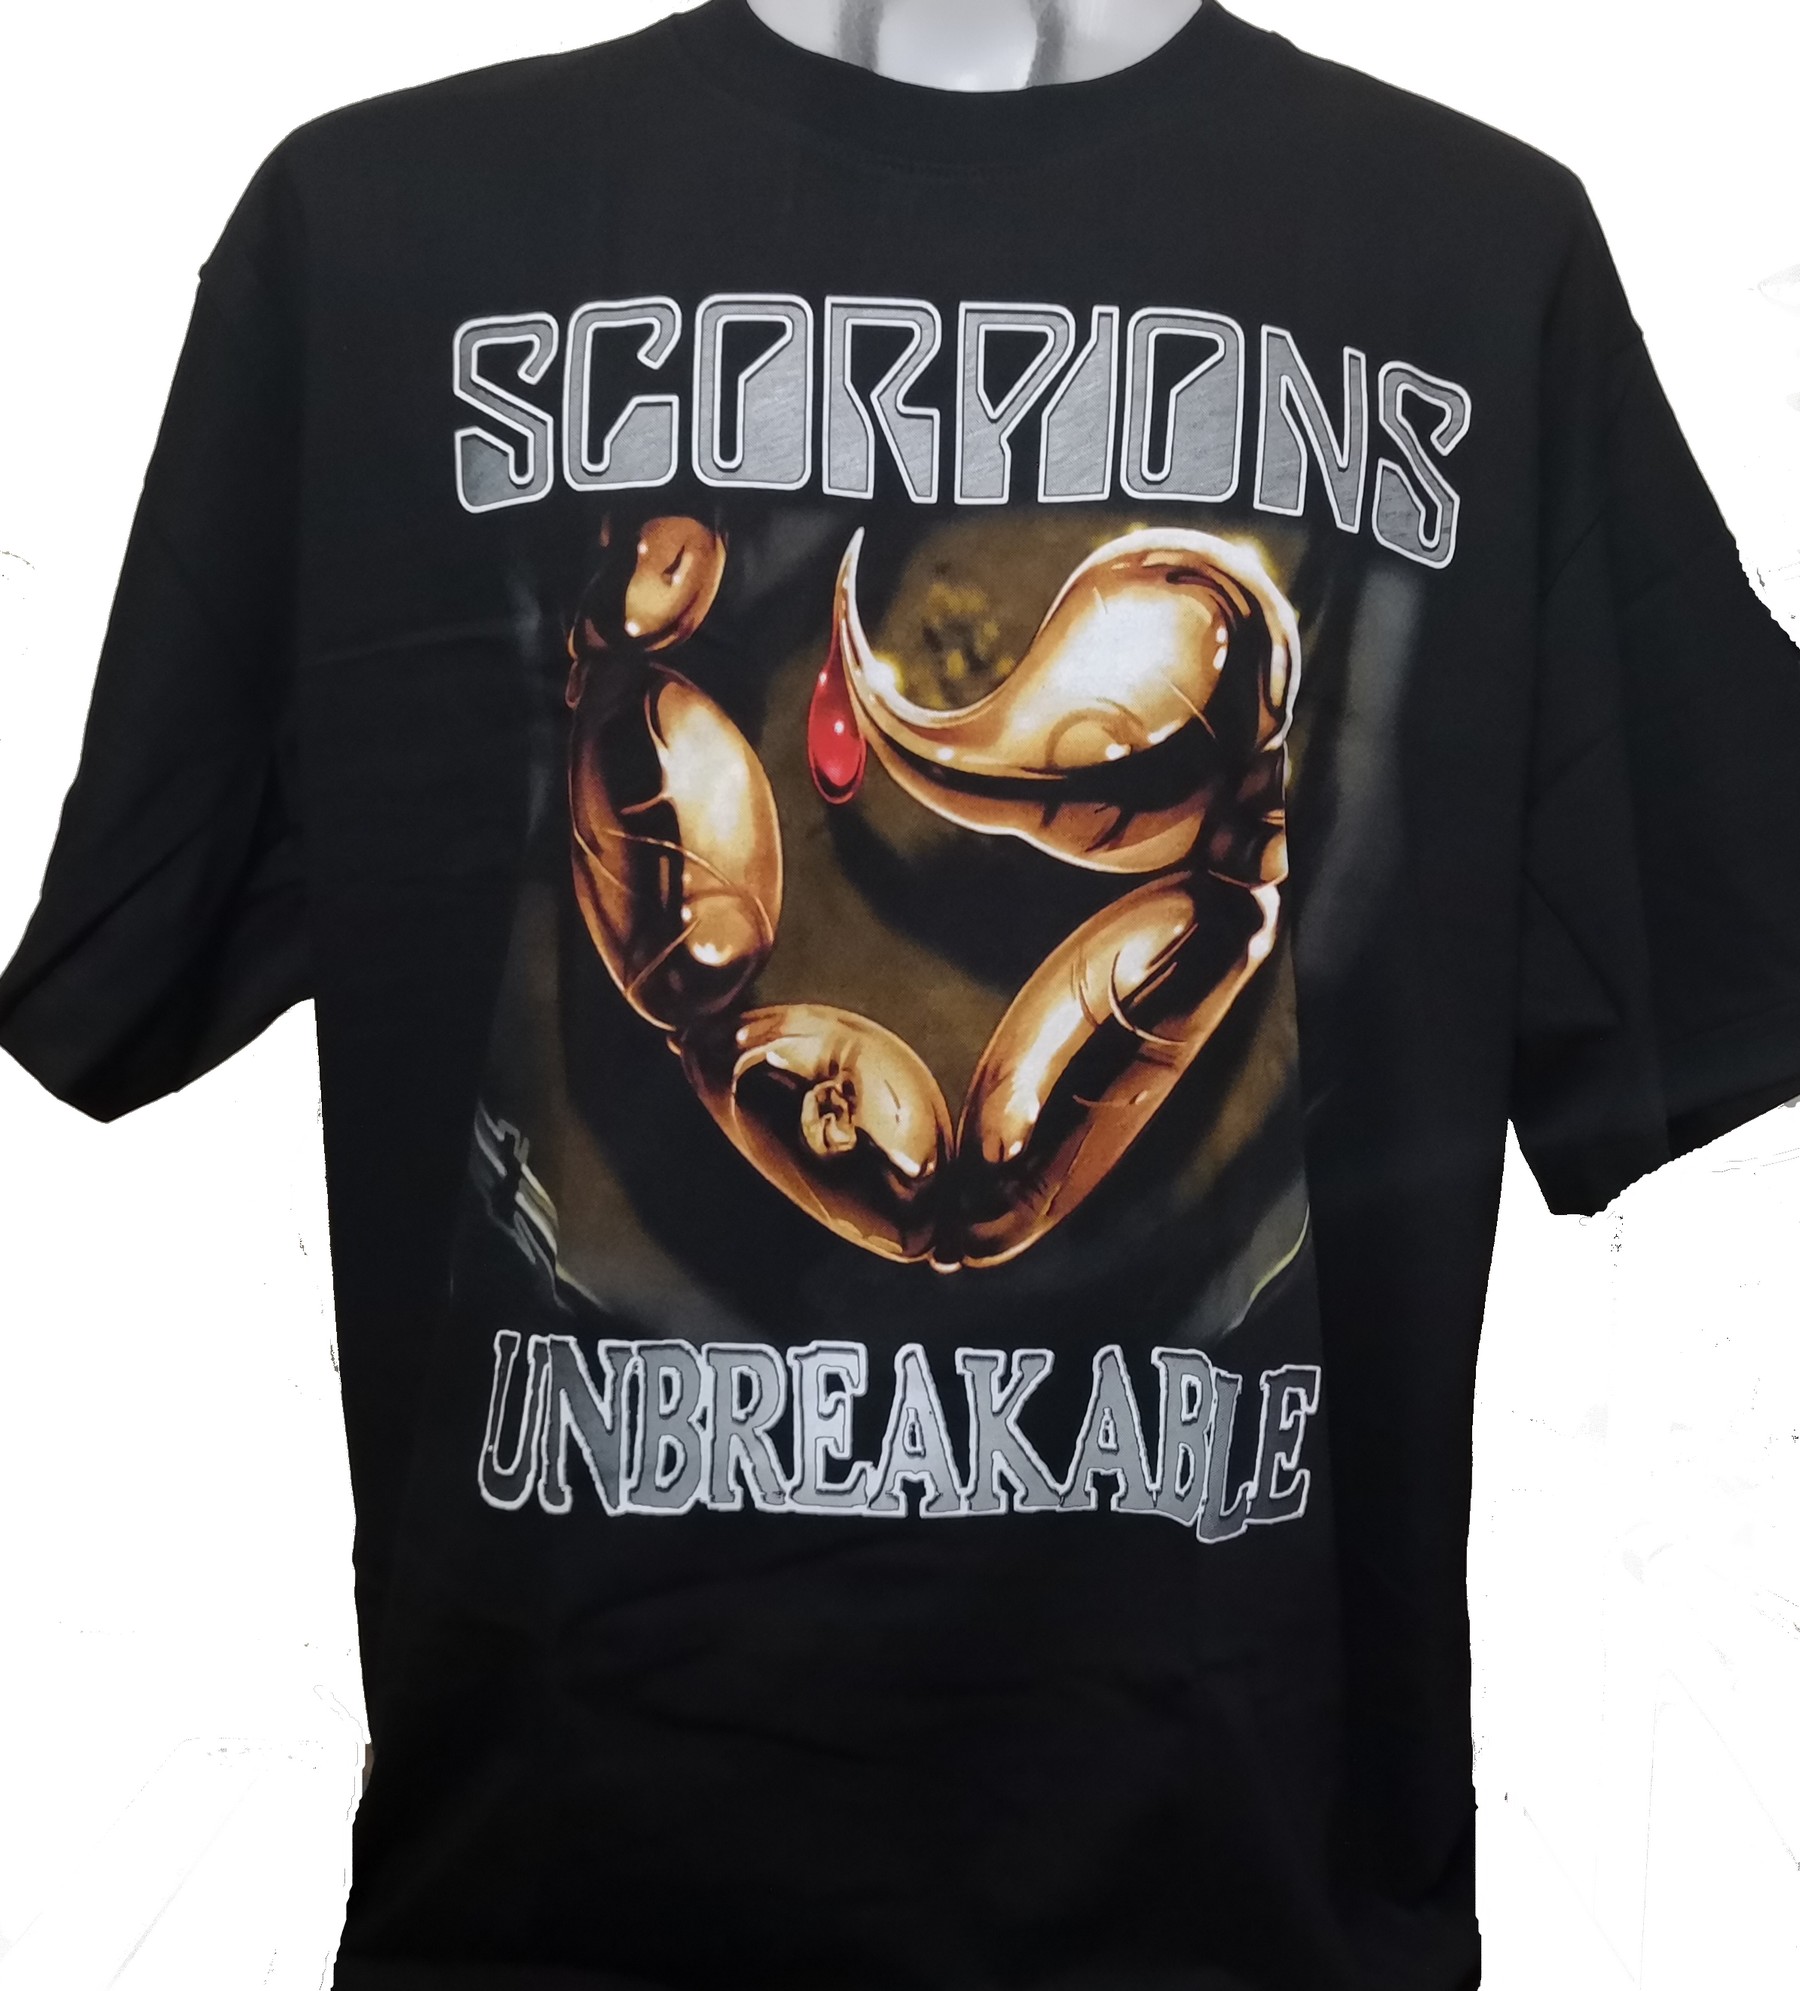 scorpions unbreakable